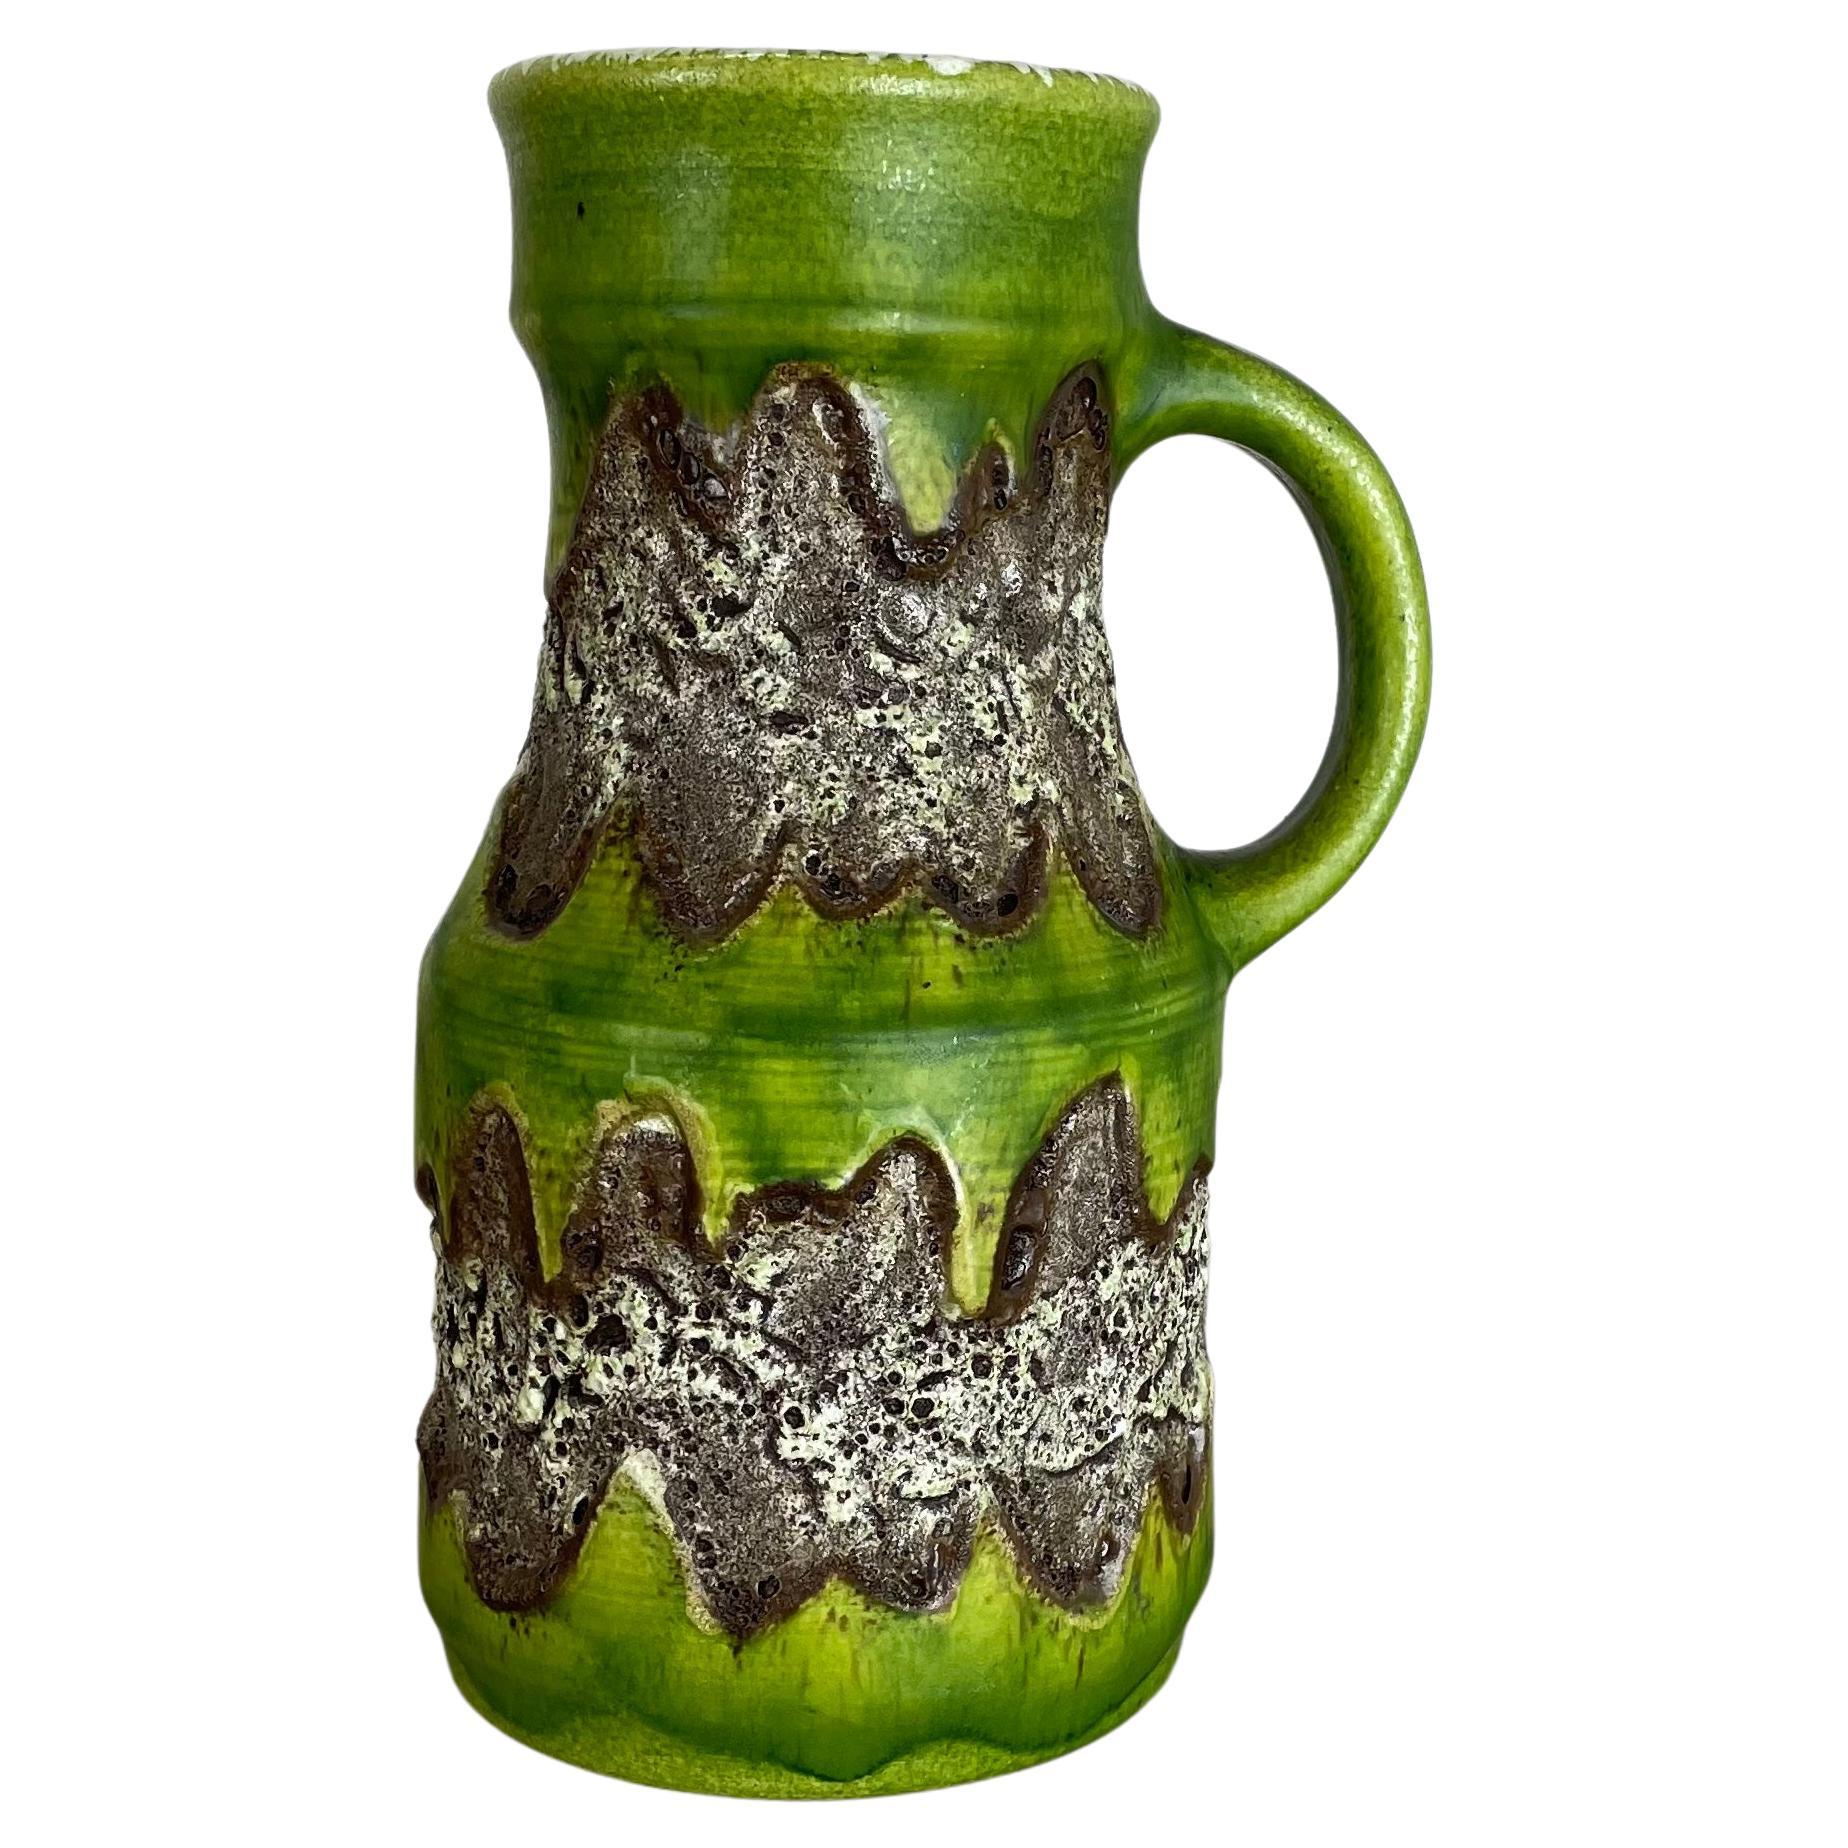 Rare Green Brutalist Fat Lava Ceramic Vases by Dümler and Breiden Germany, 1970s For Sale